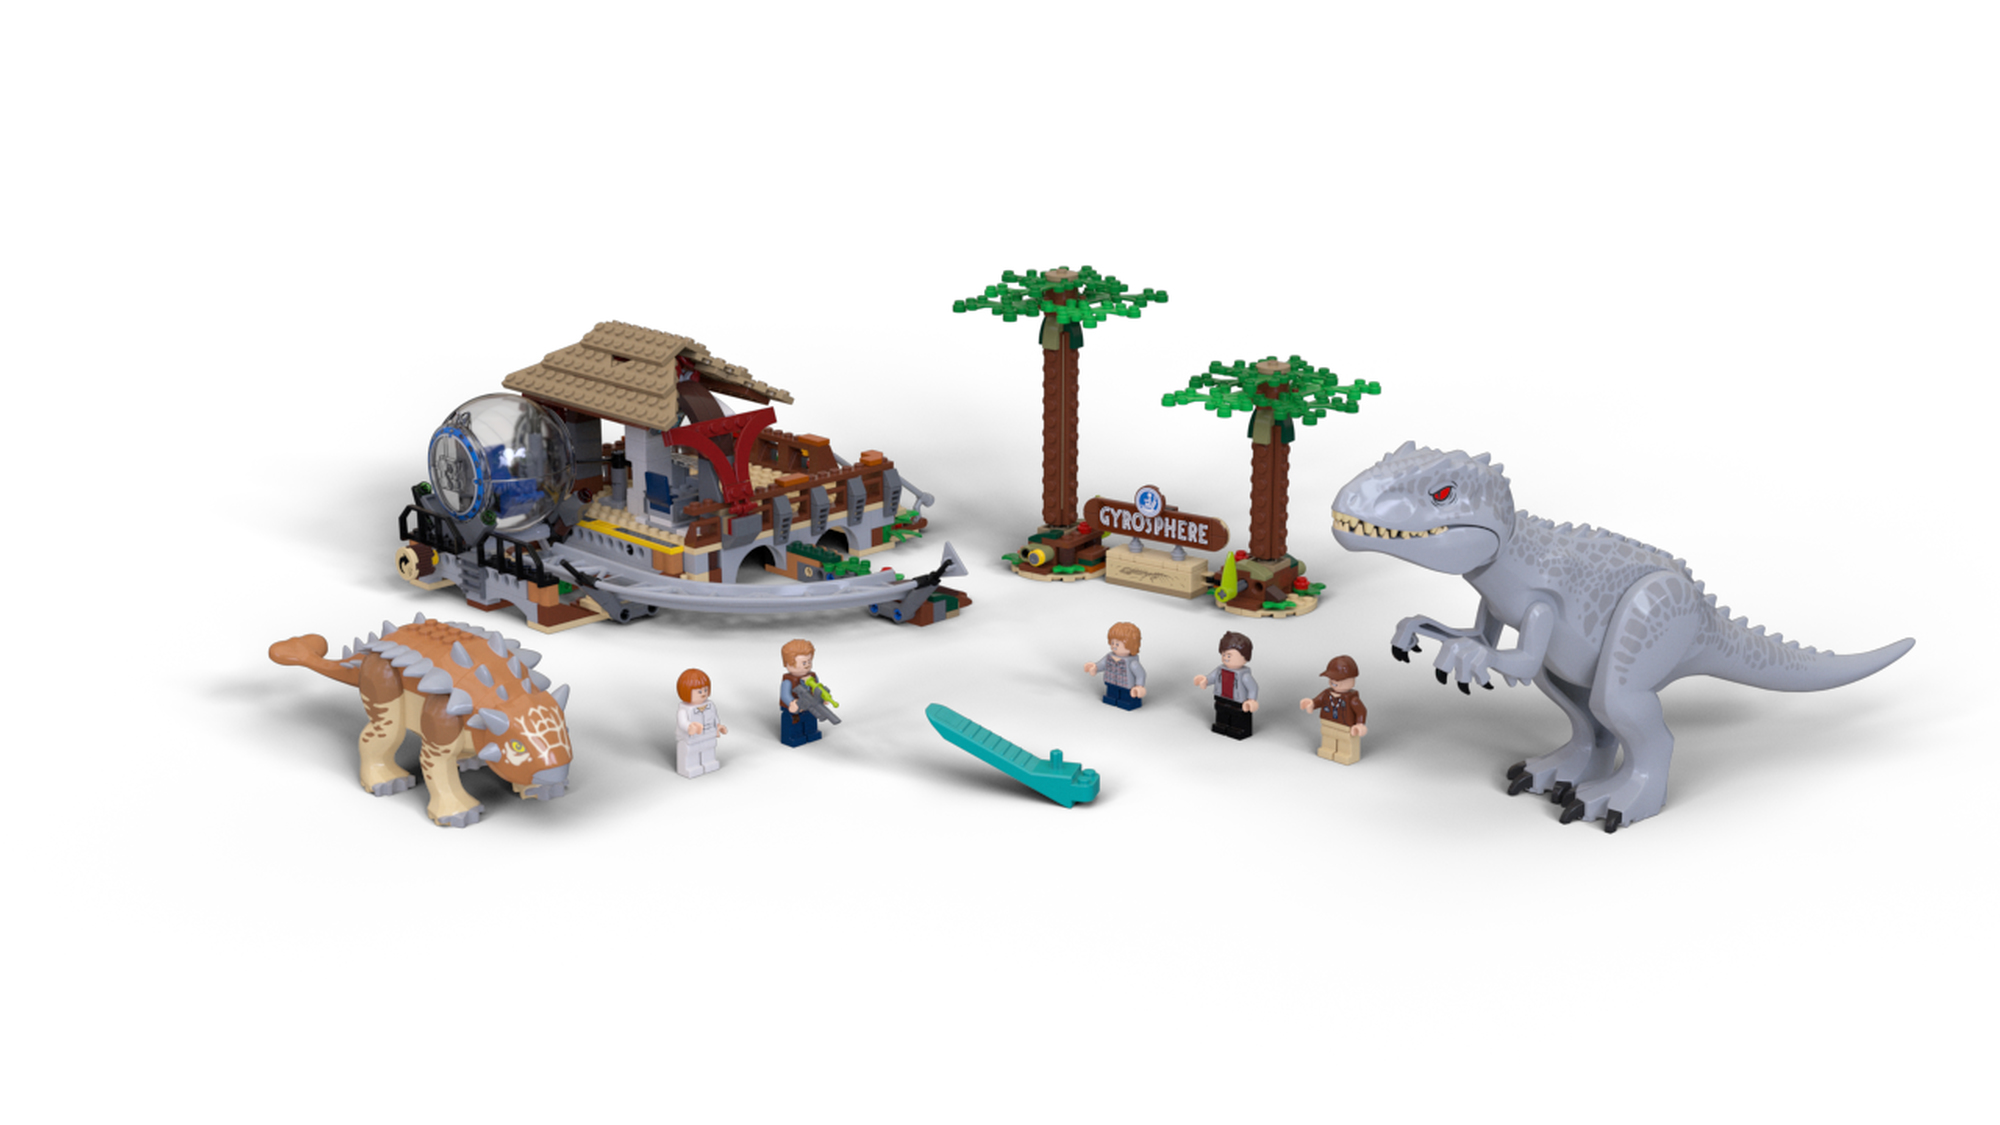 Lego Jurassic World Indominus Rex vs Ankylosaurus — Cullen's